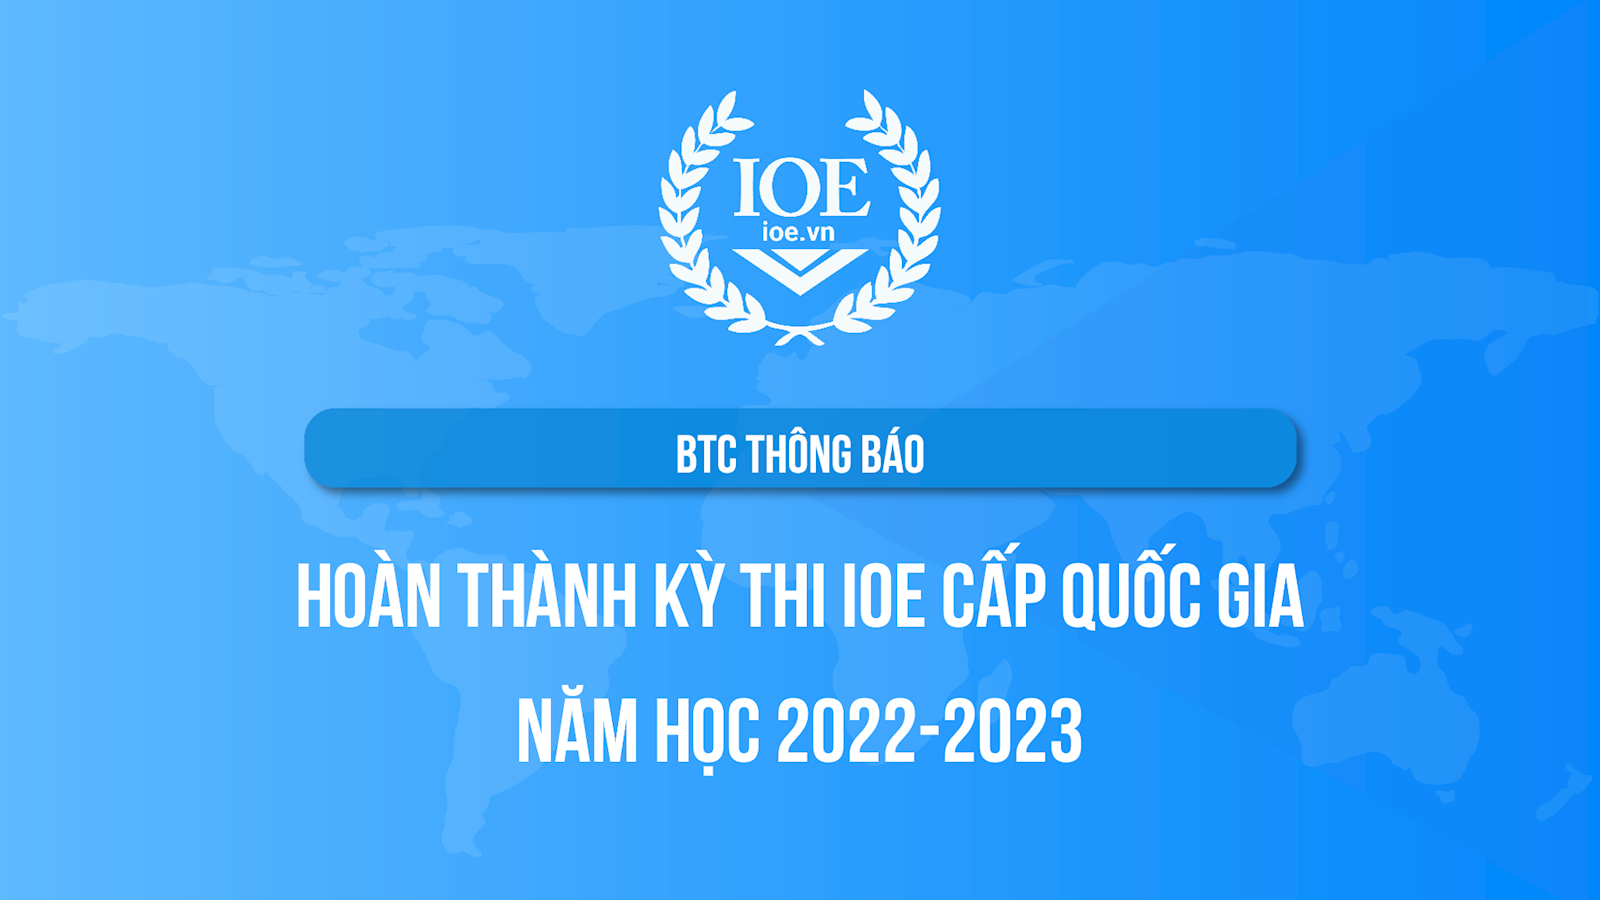 BTC thông báo hoàn thành Kỳ thi IOE cấp quốc gia năm học 2022-2023